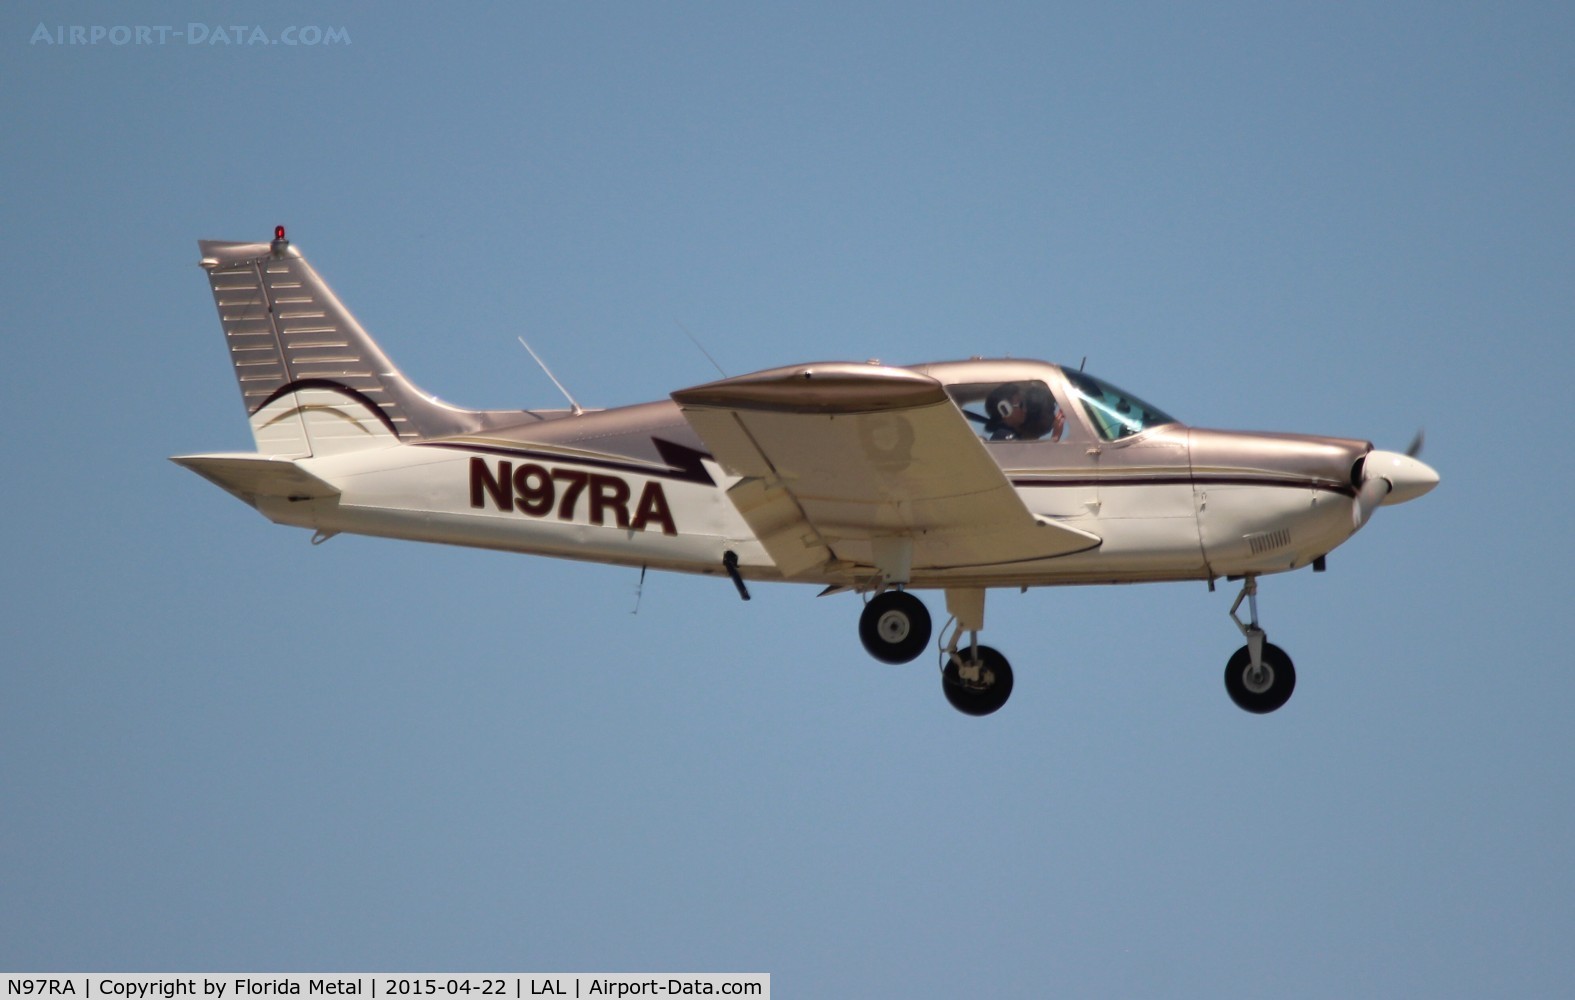 N97RA, 1976 Piper PA-28-235 C/N 28-7610020, PA-28-235